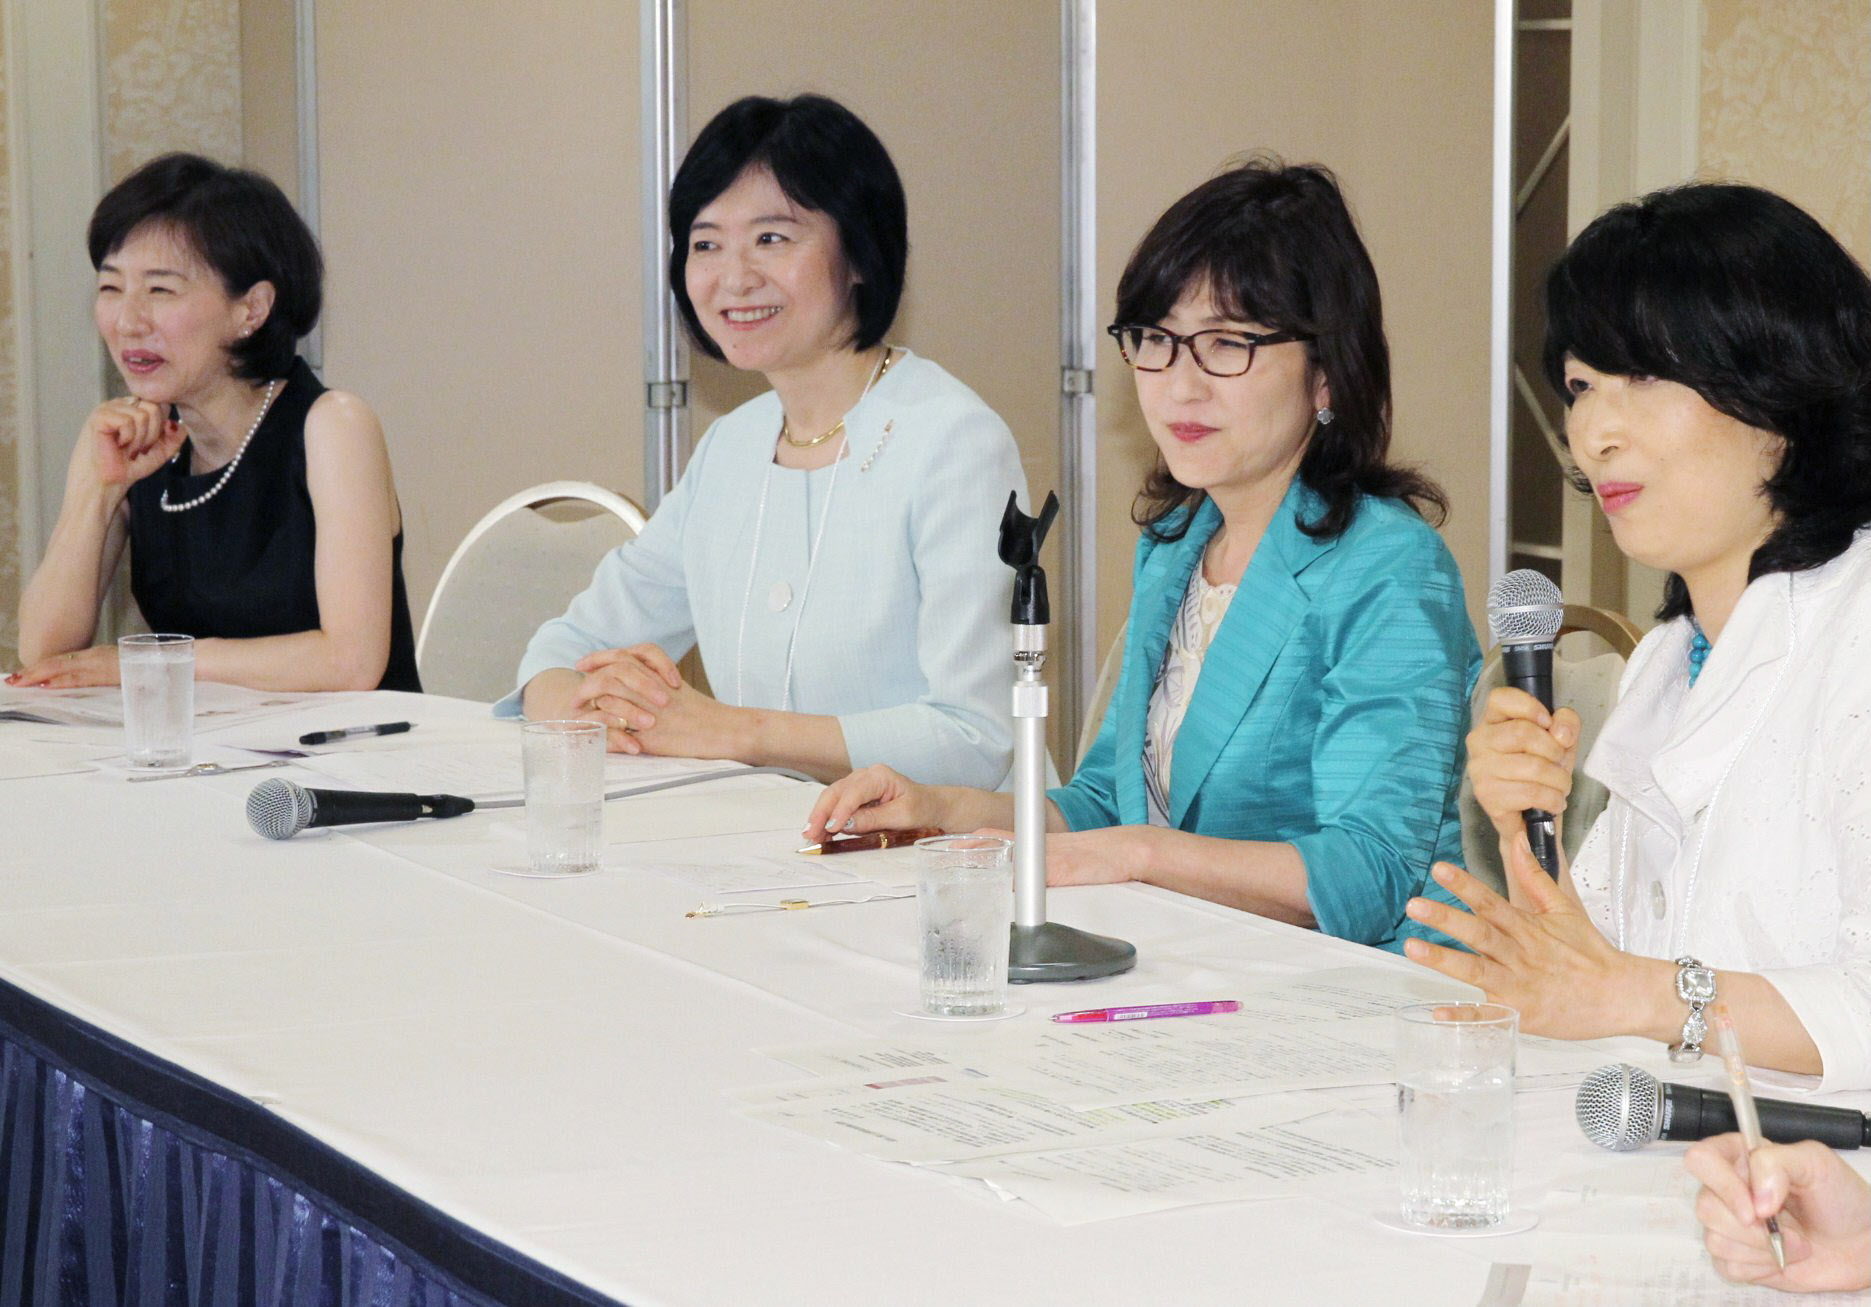 保育改革について討論する(左から)佐々木かをりさん、翁百合さん、稲田朋美さん、林いづみさん(7月、東京都港区)